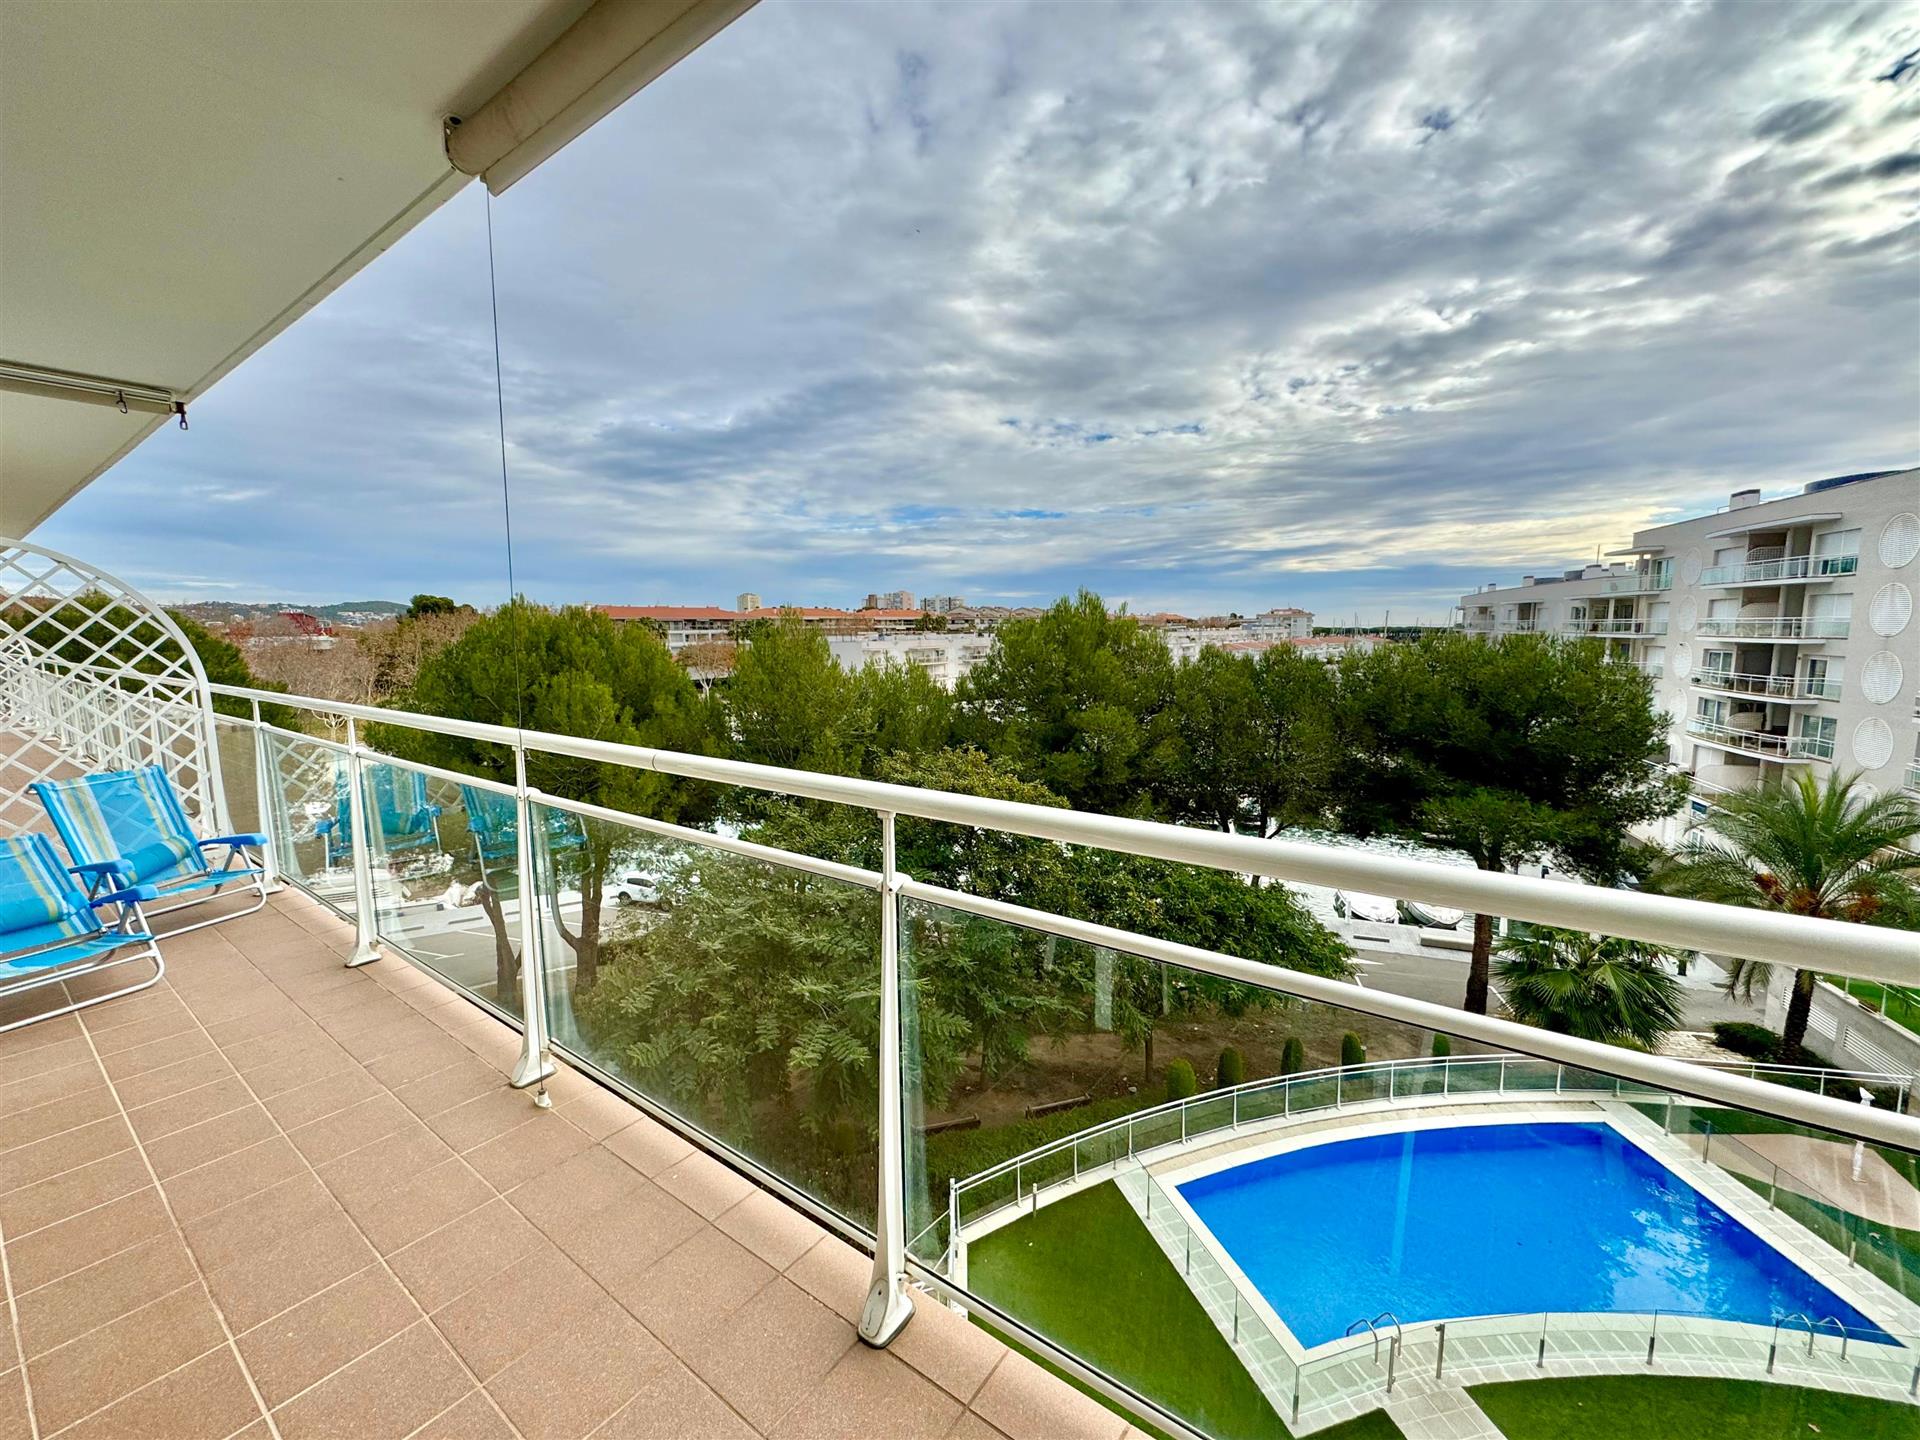 Apartamento situado en zona puerto de Platja d'Aro con fantásticas vistas despejadas y vistas al mar